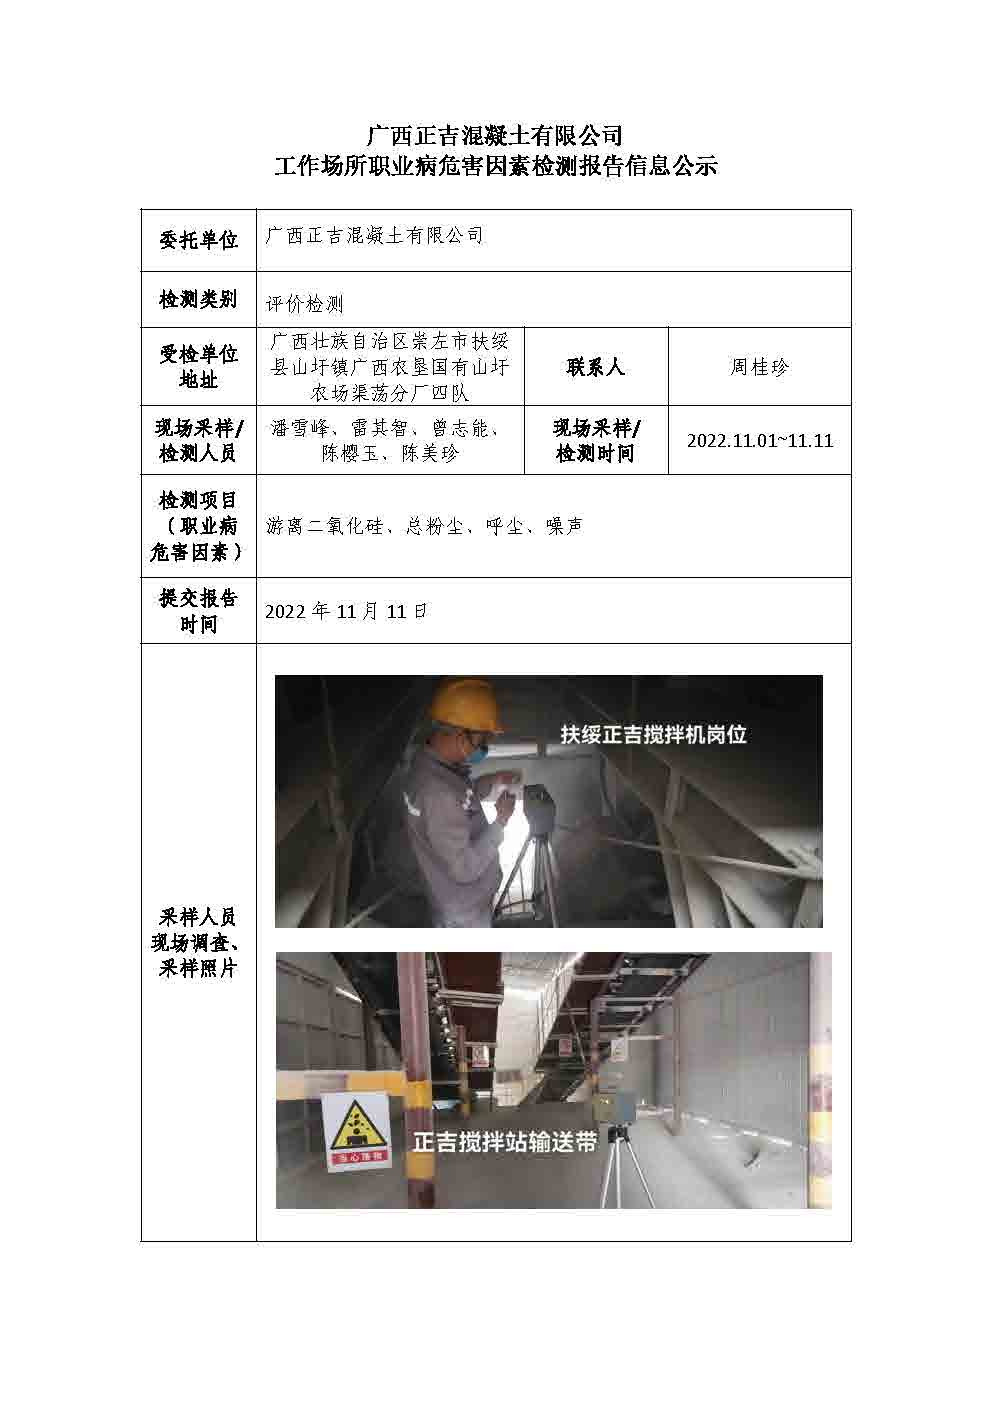 广西正吉混凝土有限公司工作场所职业病危害因素检测报告信息公示